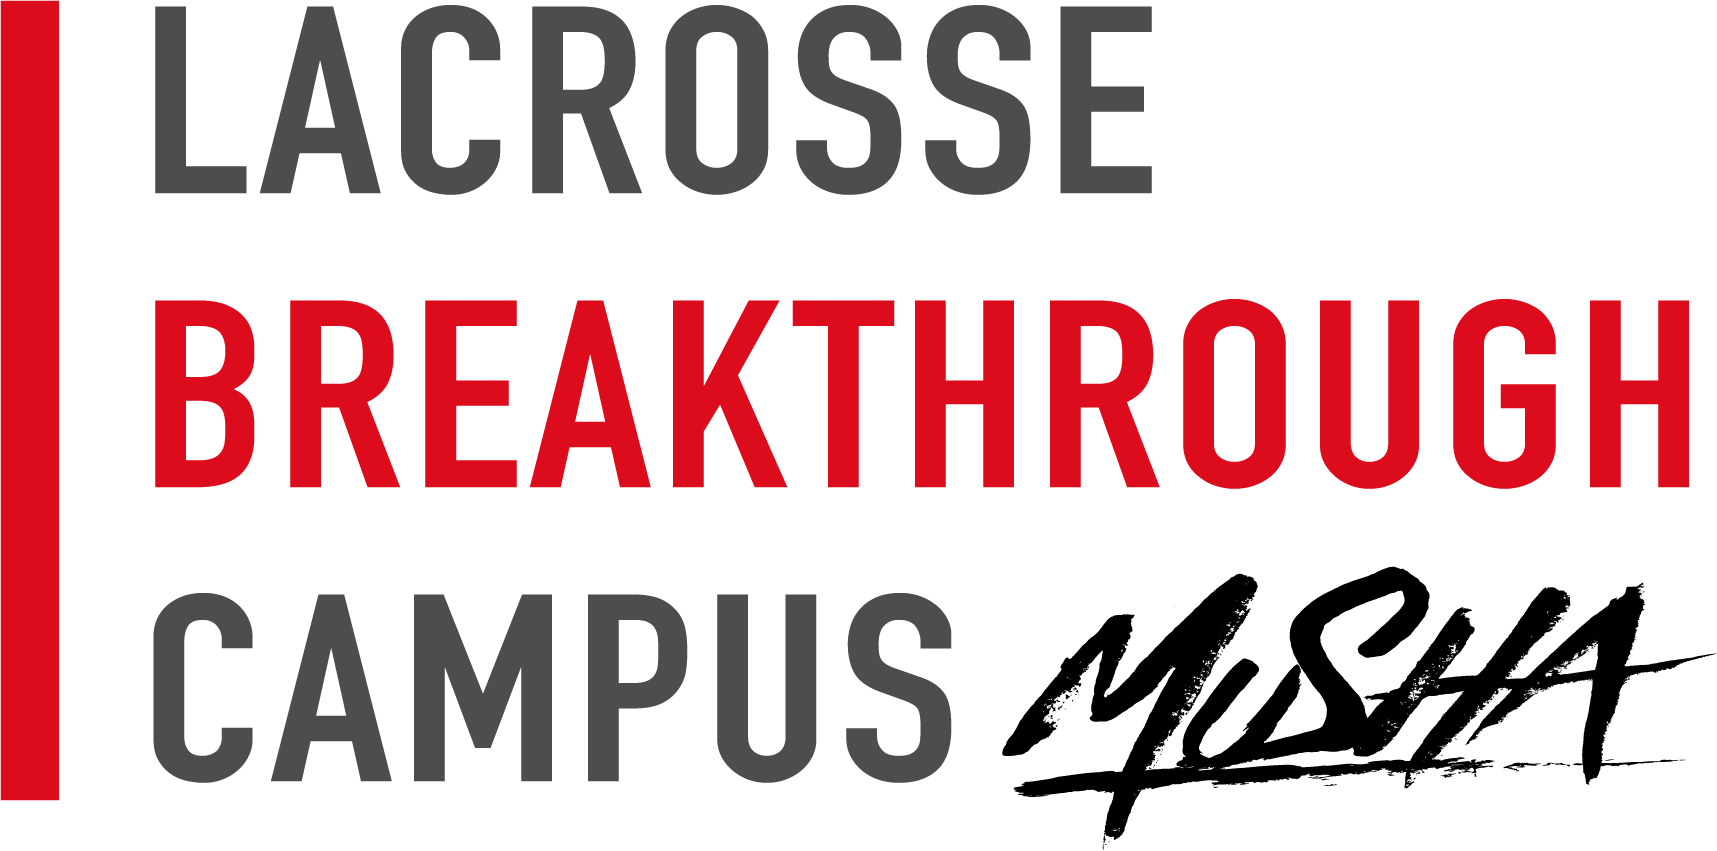 Lacrosse Breakthrough Campus Musha